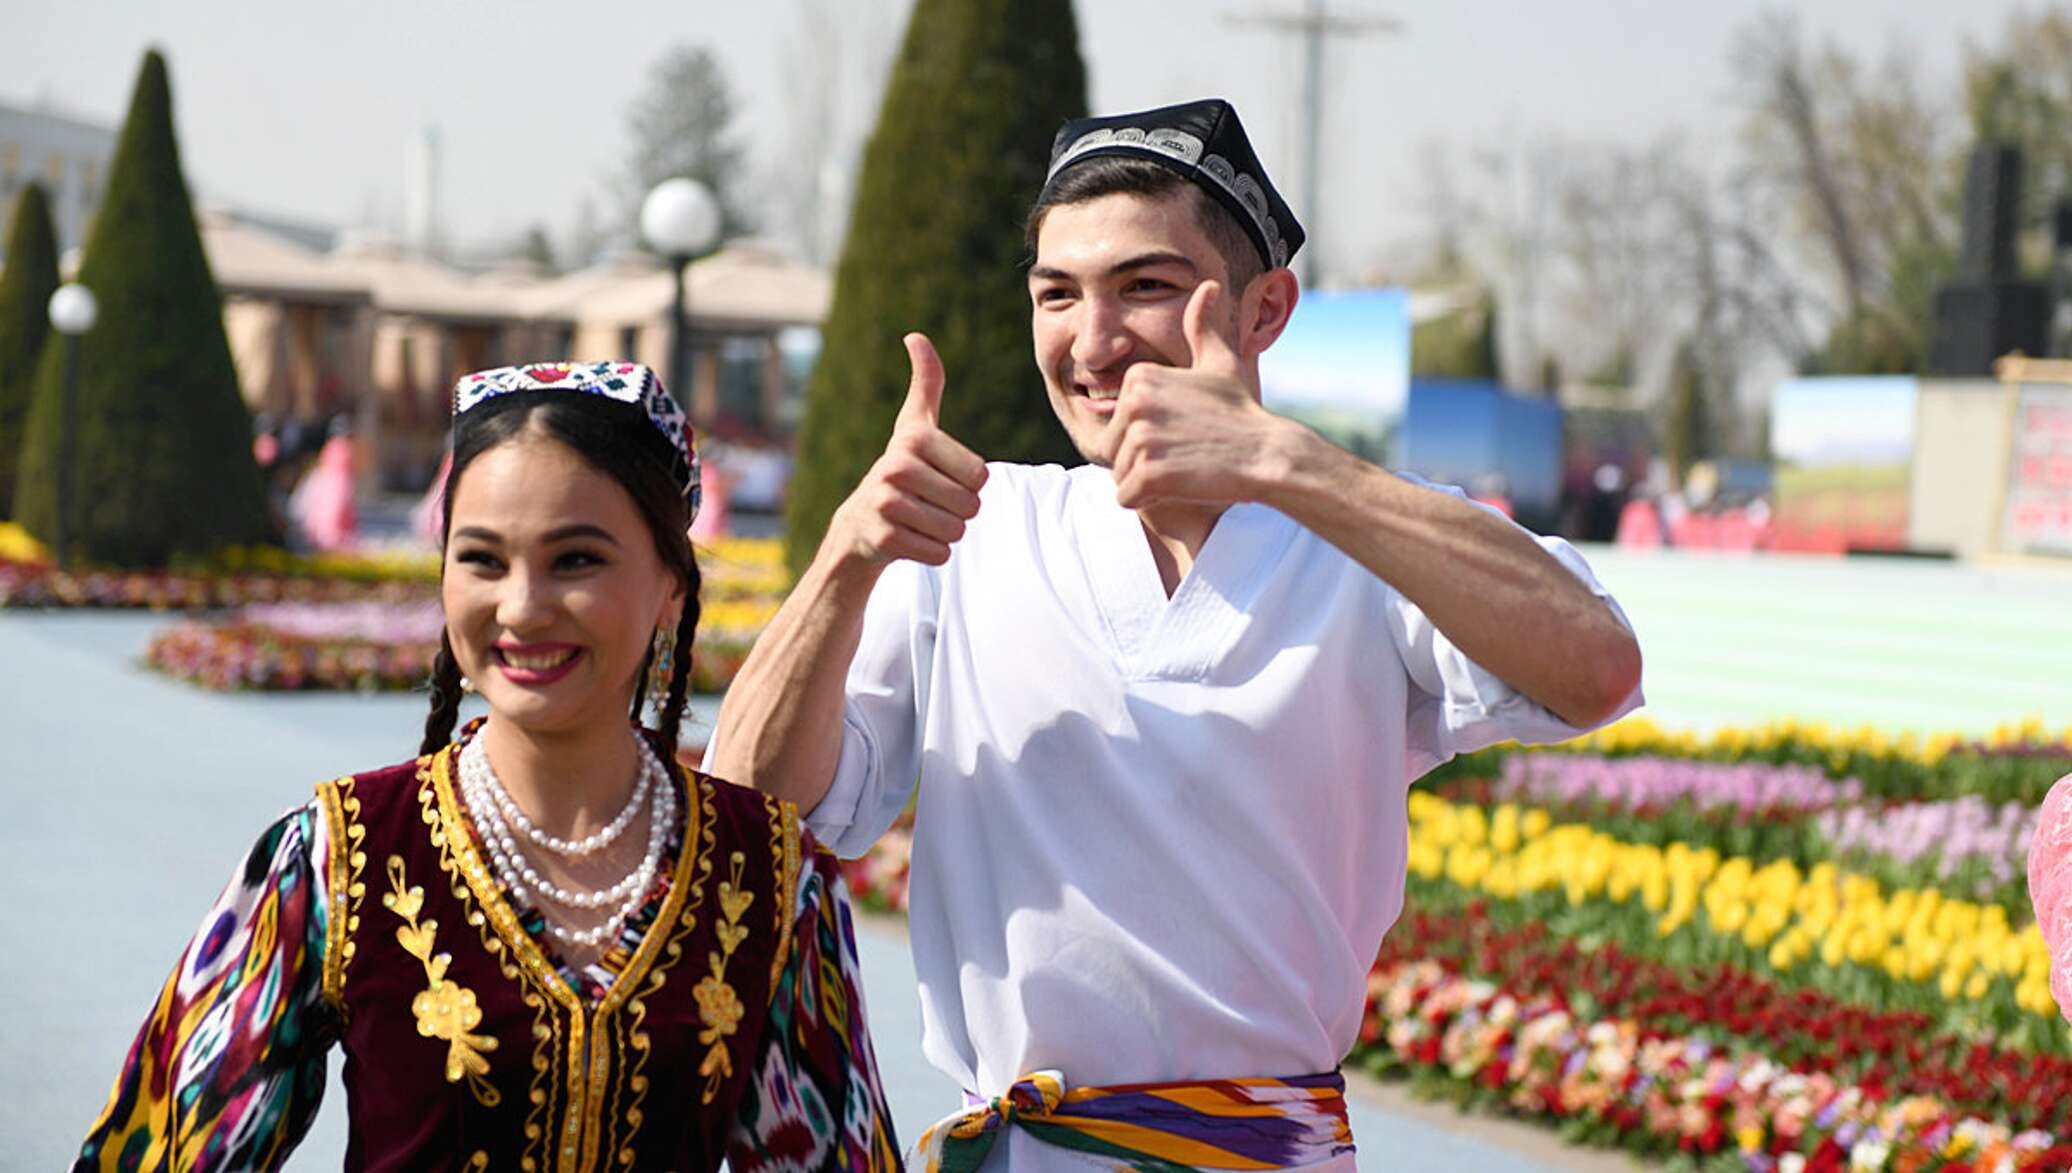 Узбекский стать. Празднование Навруза в Узбекистане. Миллий ракслар. Навруз в Бухаре. Узбечки на Навруз.